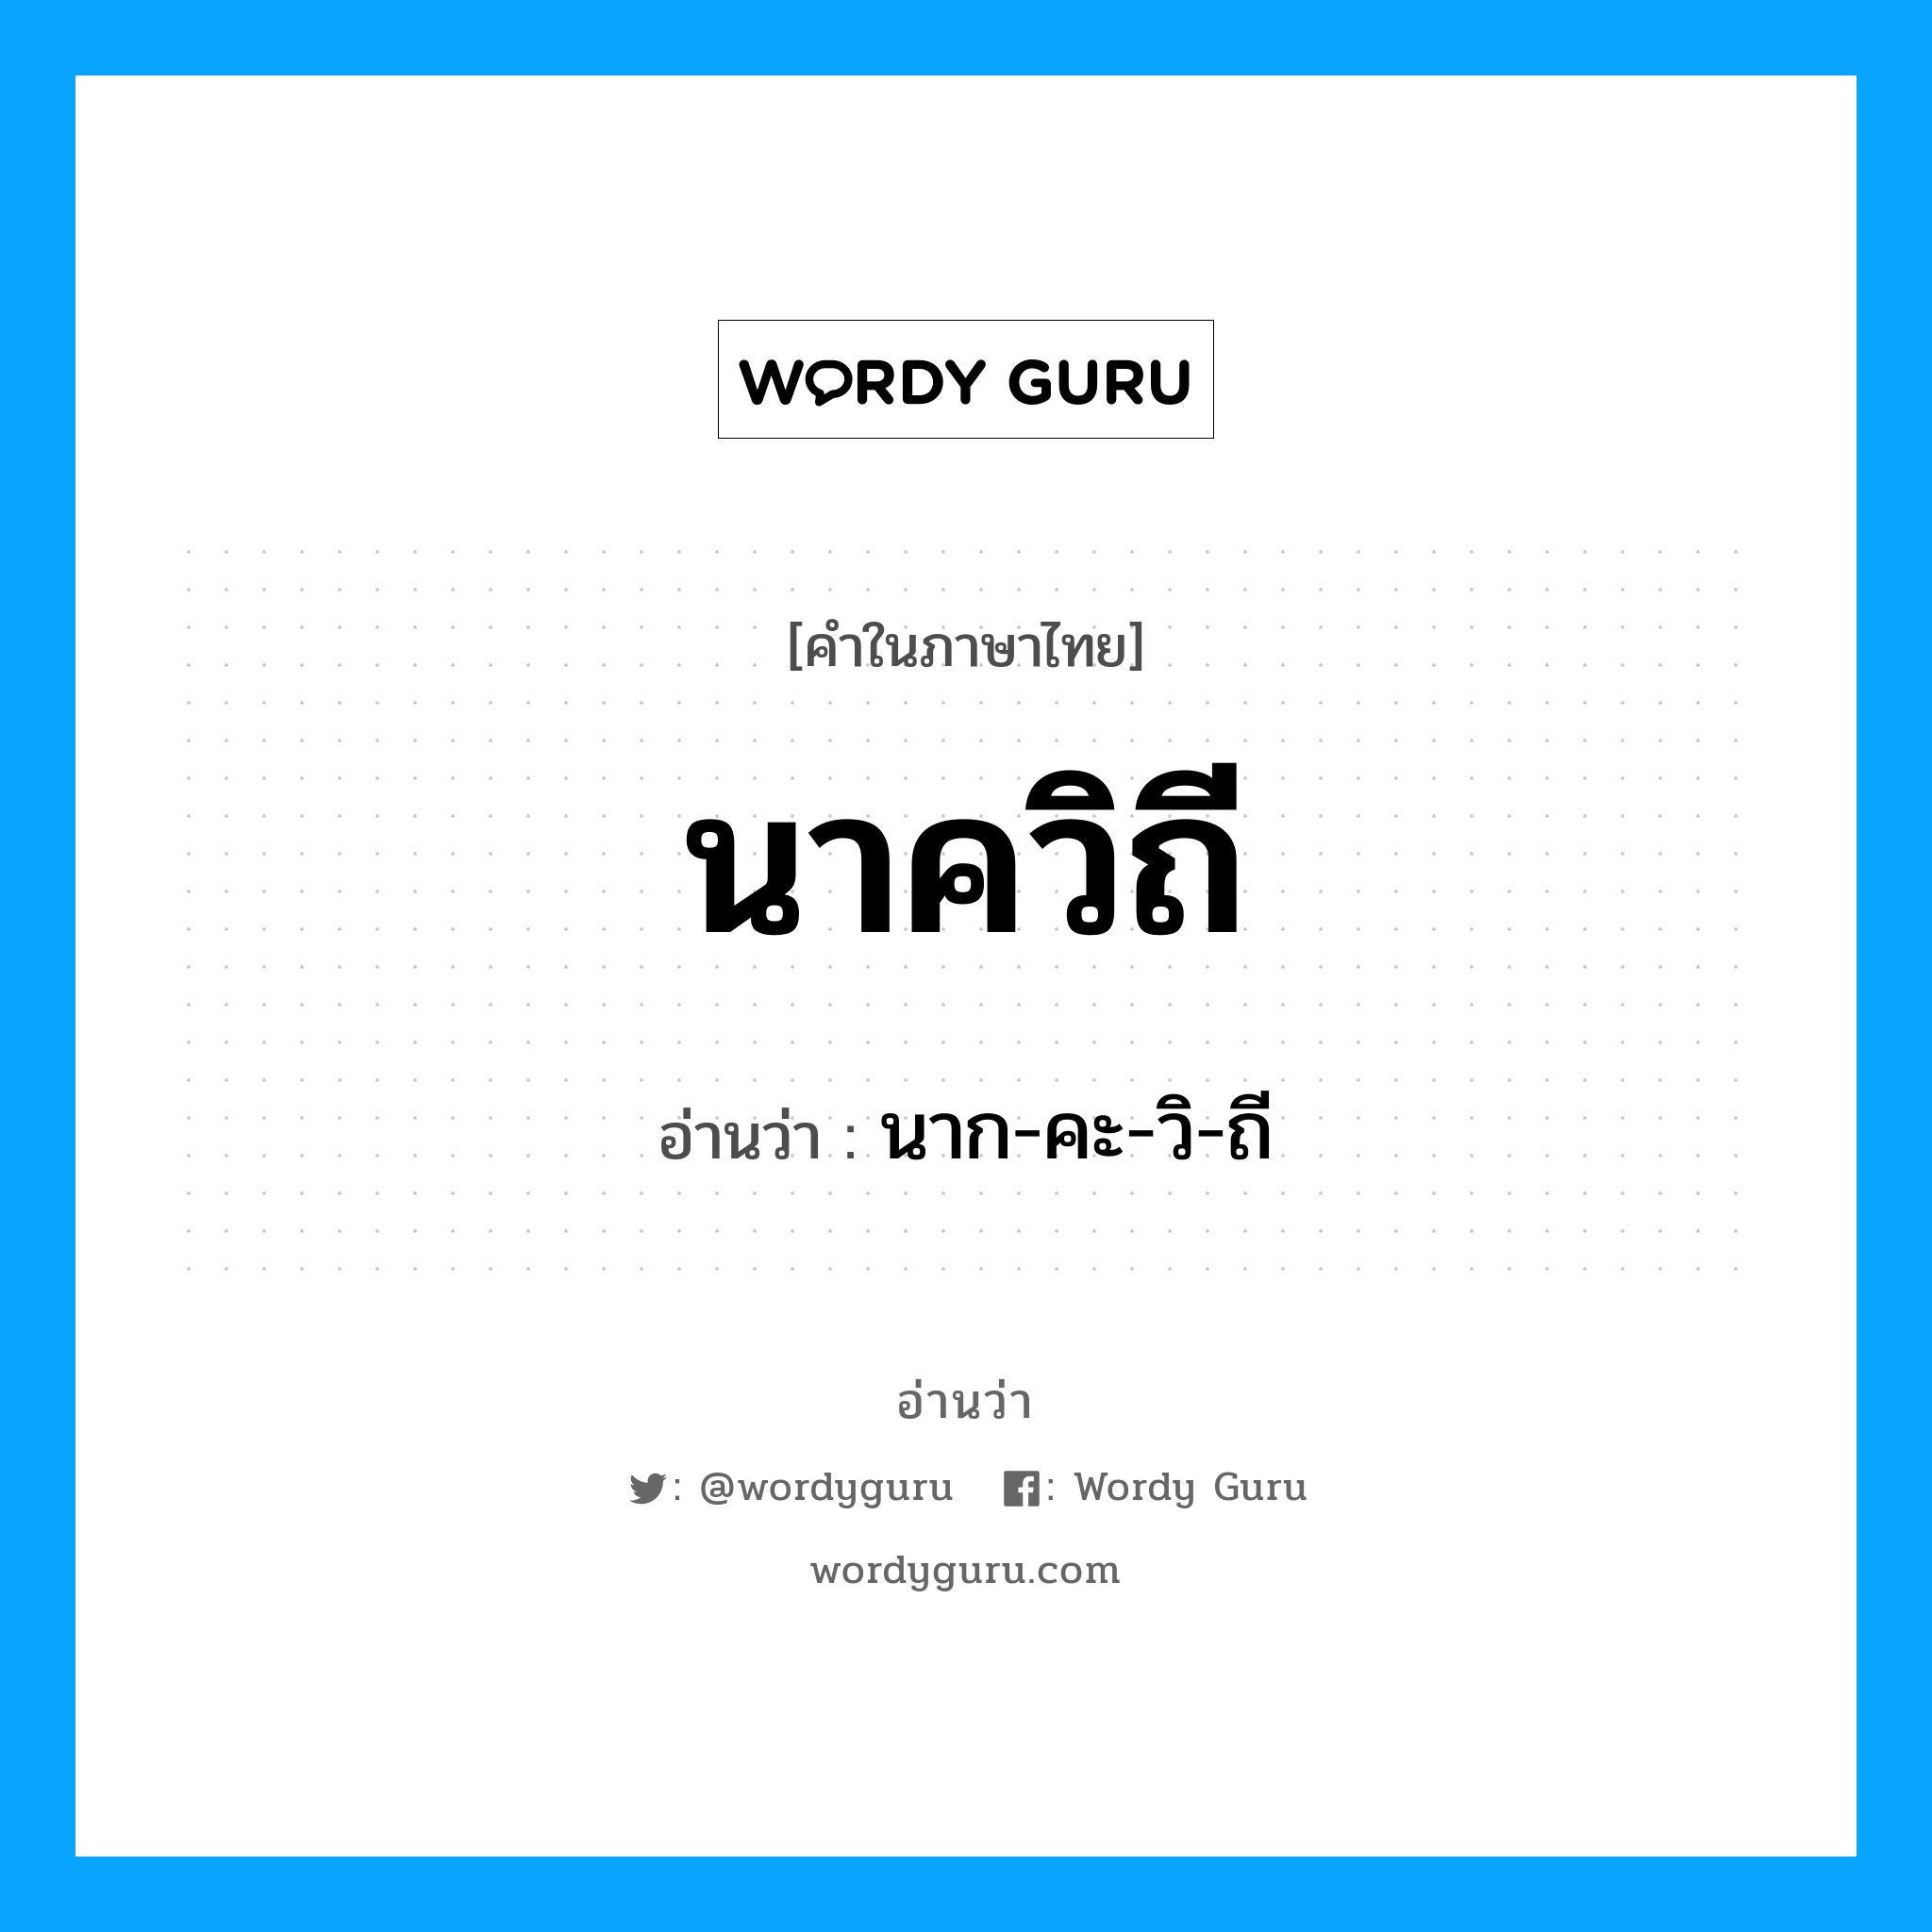 นาก-คะ-วิ-ถี เป็นคำอ่านของคำไหน?, คำในภาษาไทย นาก-คะ-วิ-ถี อ่านว่า นาควิถี